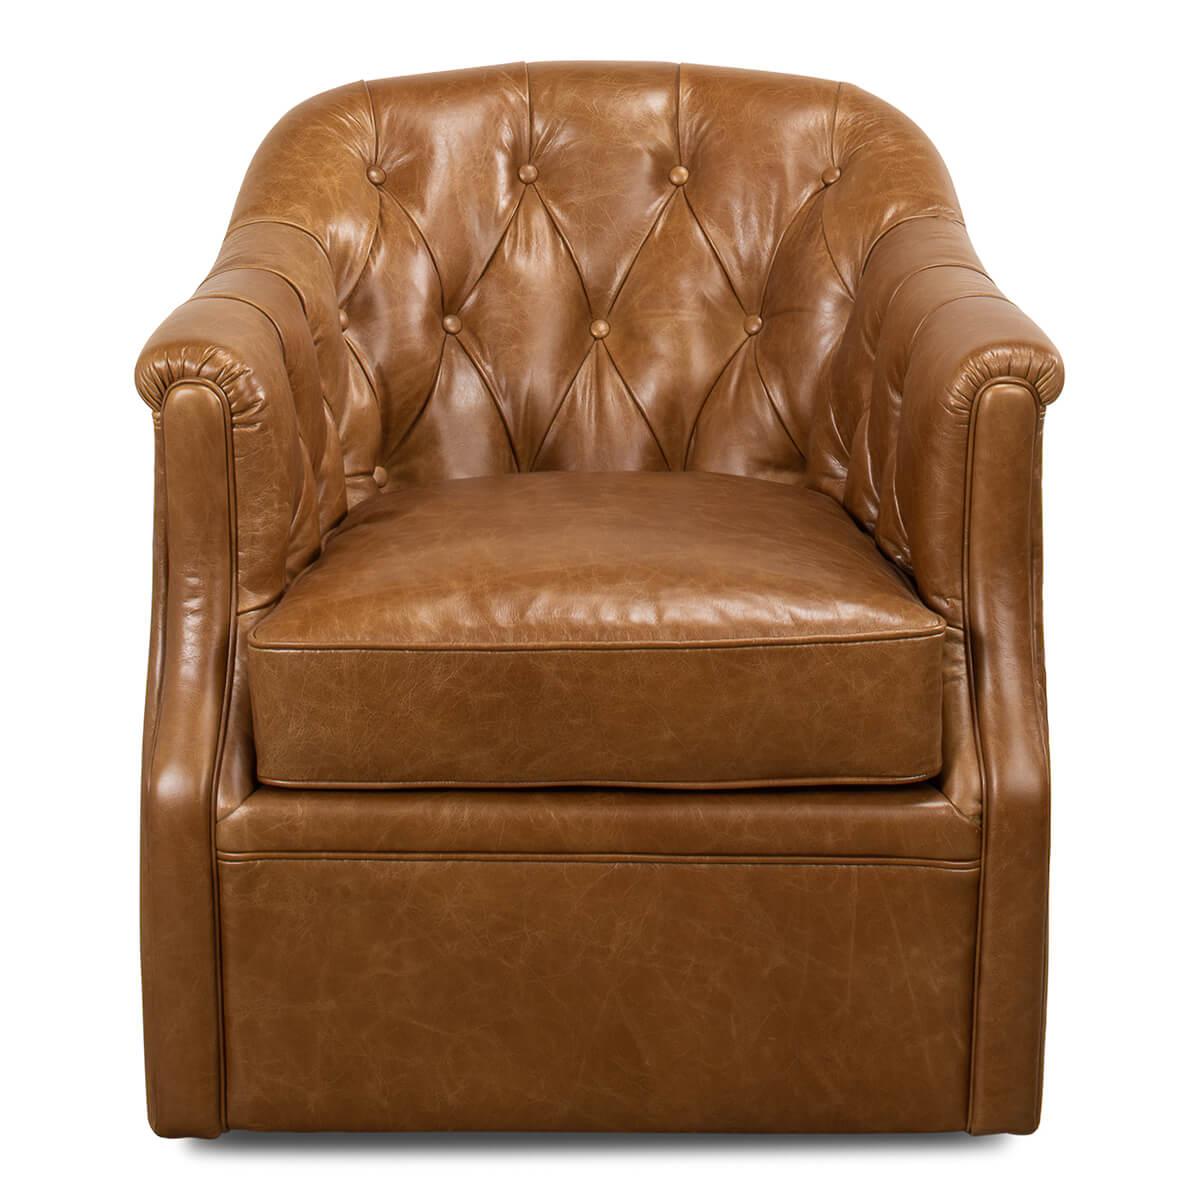 Un fauteuil classique à dossier tubulaire rembourré en cuir. Dans notre cuir marron cuba, avec dossier touffeté de boutons et assise rembourrée, le tout reposant sur une base pivotante.

Dimensions : largeur 76,2 cm x profondeur 71,12 cm x hauteur